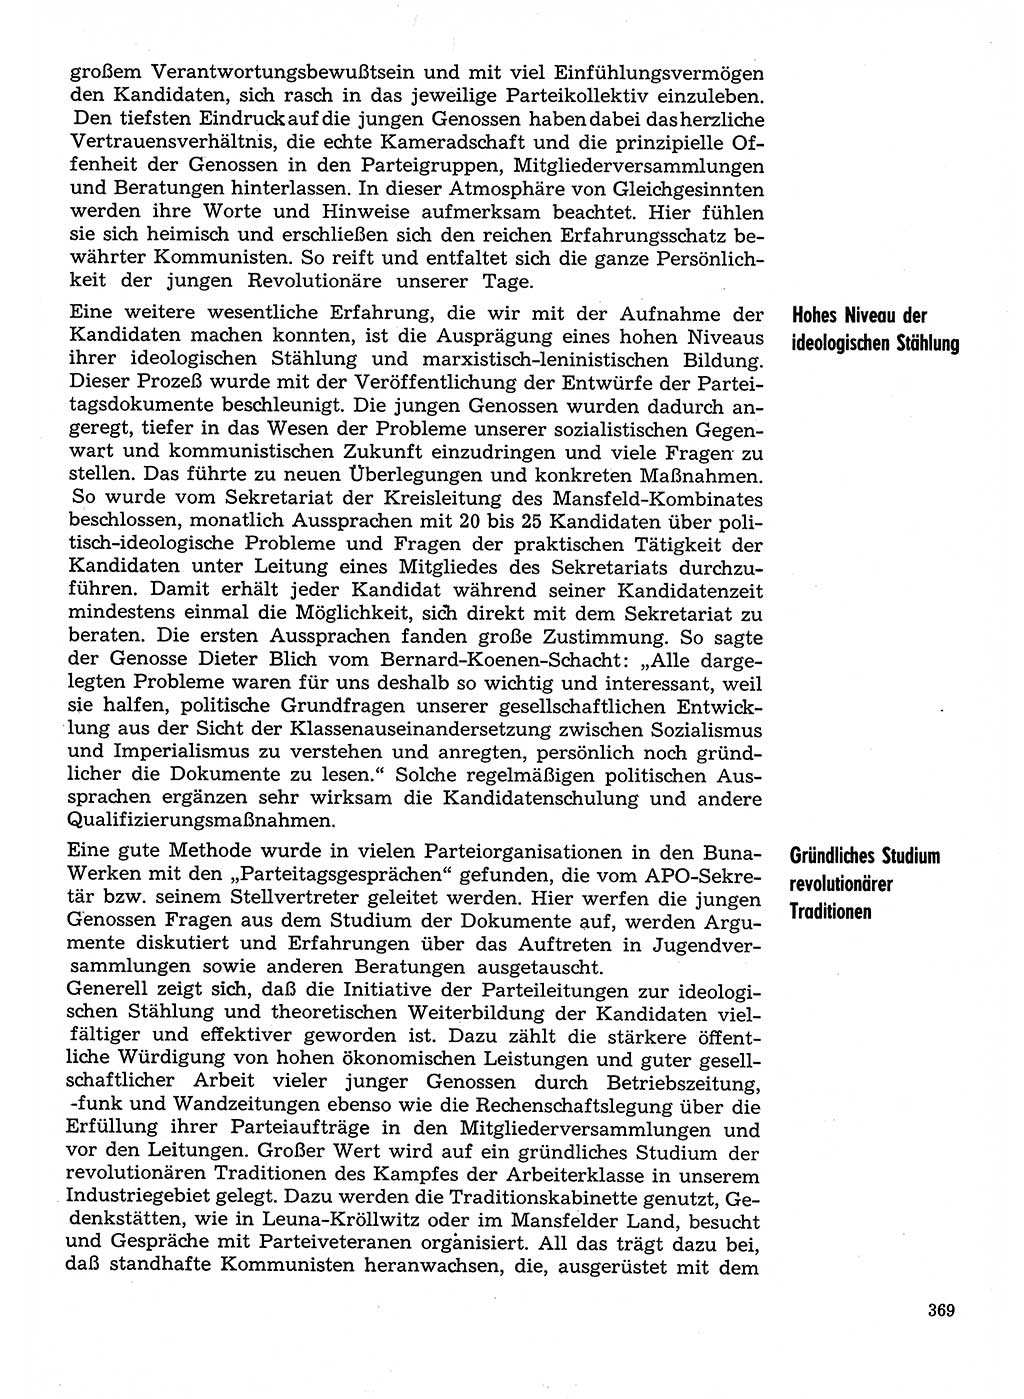 Neuer Weg (NW), Organ des Zentralkomitees (ZK) der SED (Sozialistische Einheitspartei Deutschlands) für Fragen des Parteilebens, 31. Jahrgang [Deutsche Demokratische Republik (DDR)] 1976, Seite 369 (NW ZK SED DDR 1976, S. 369)